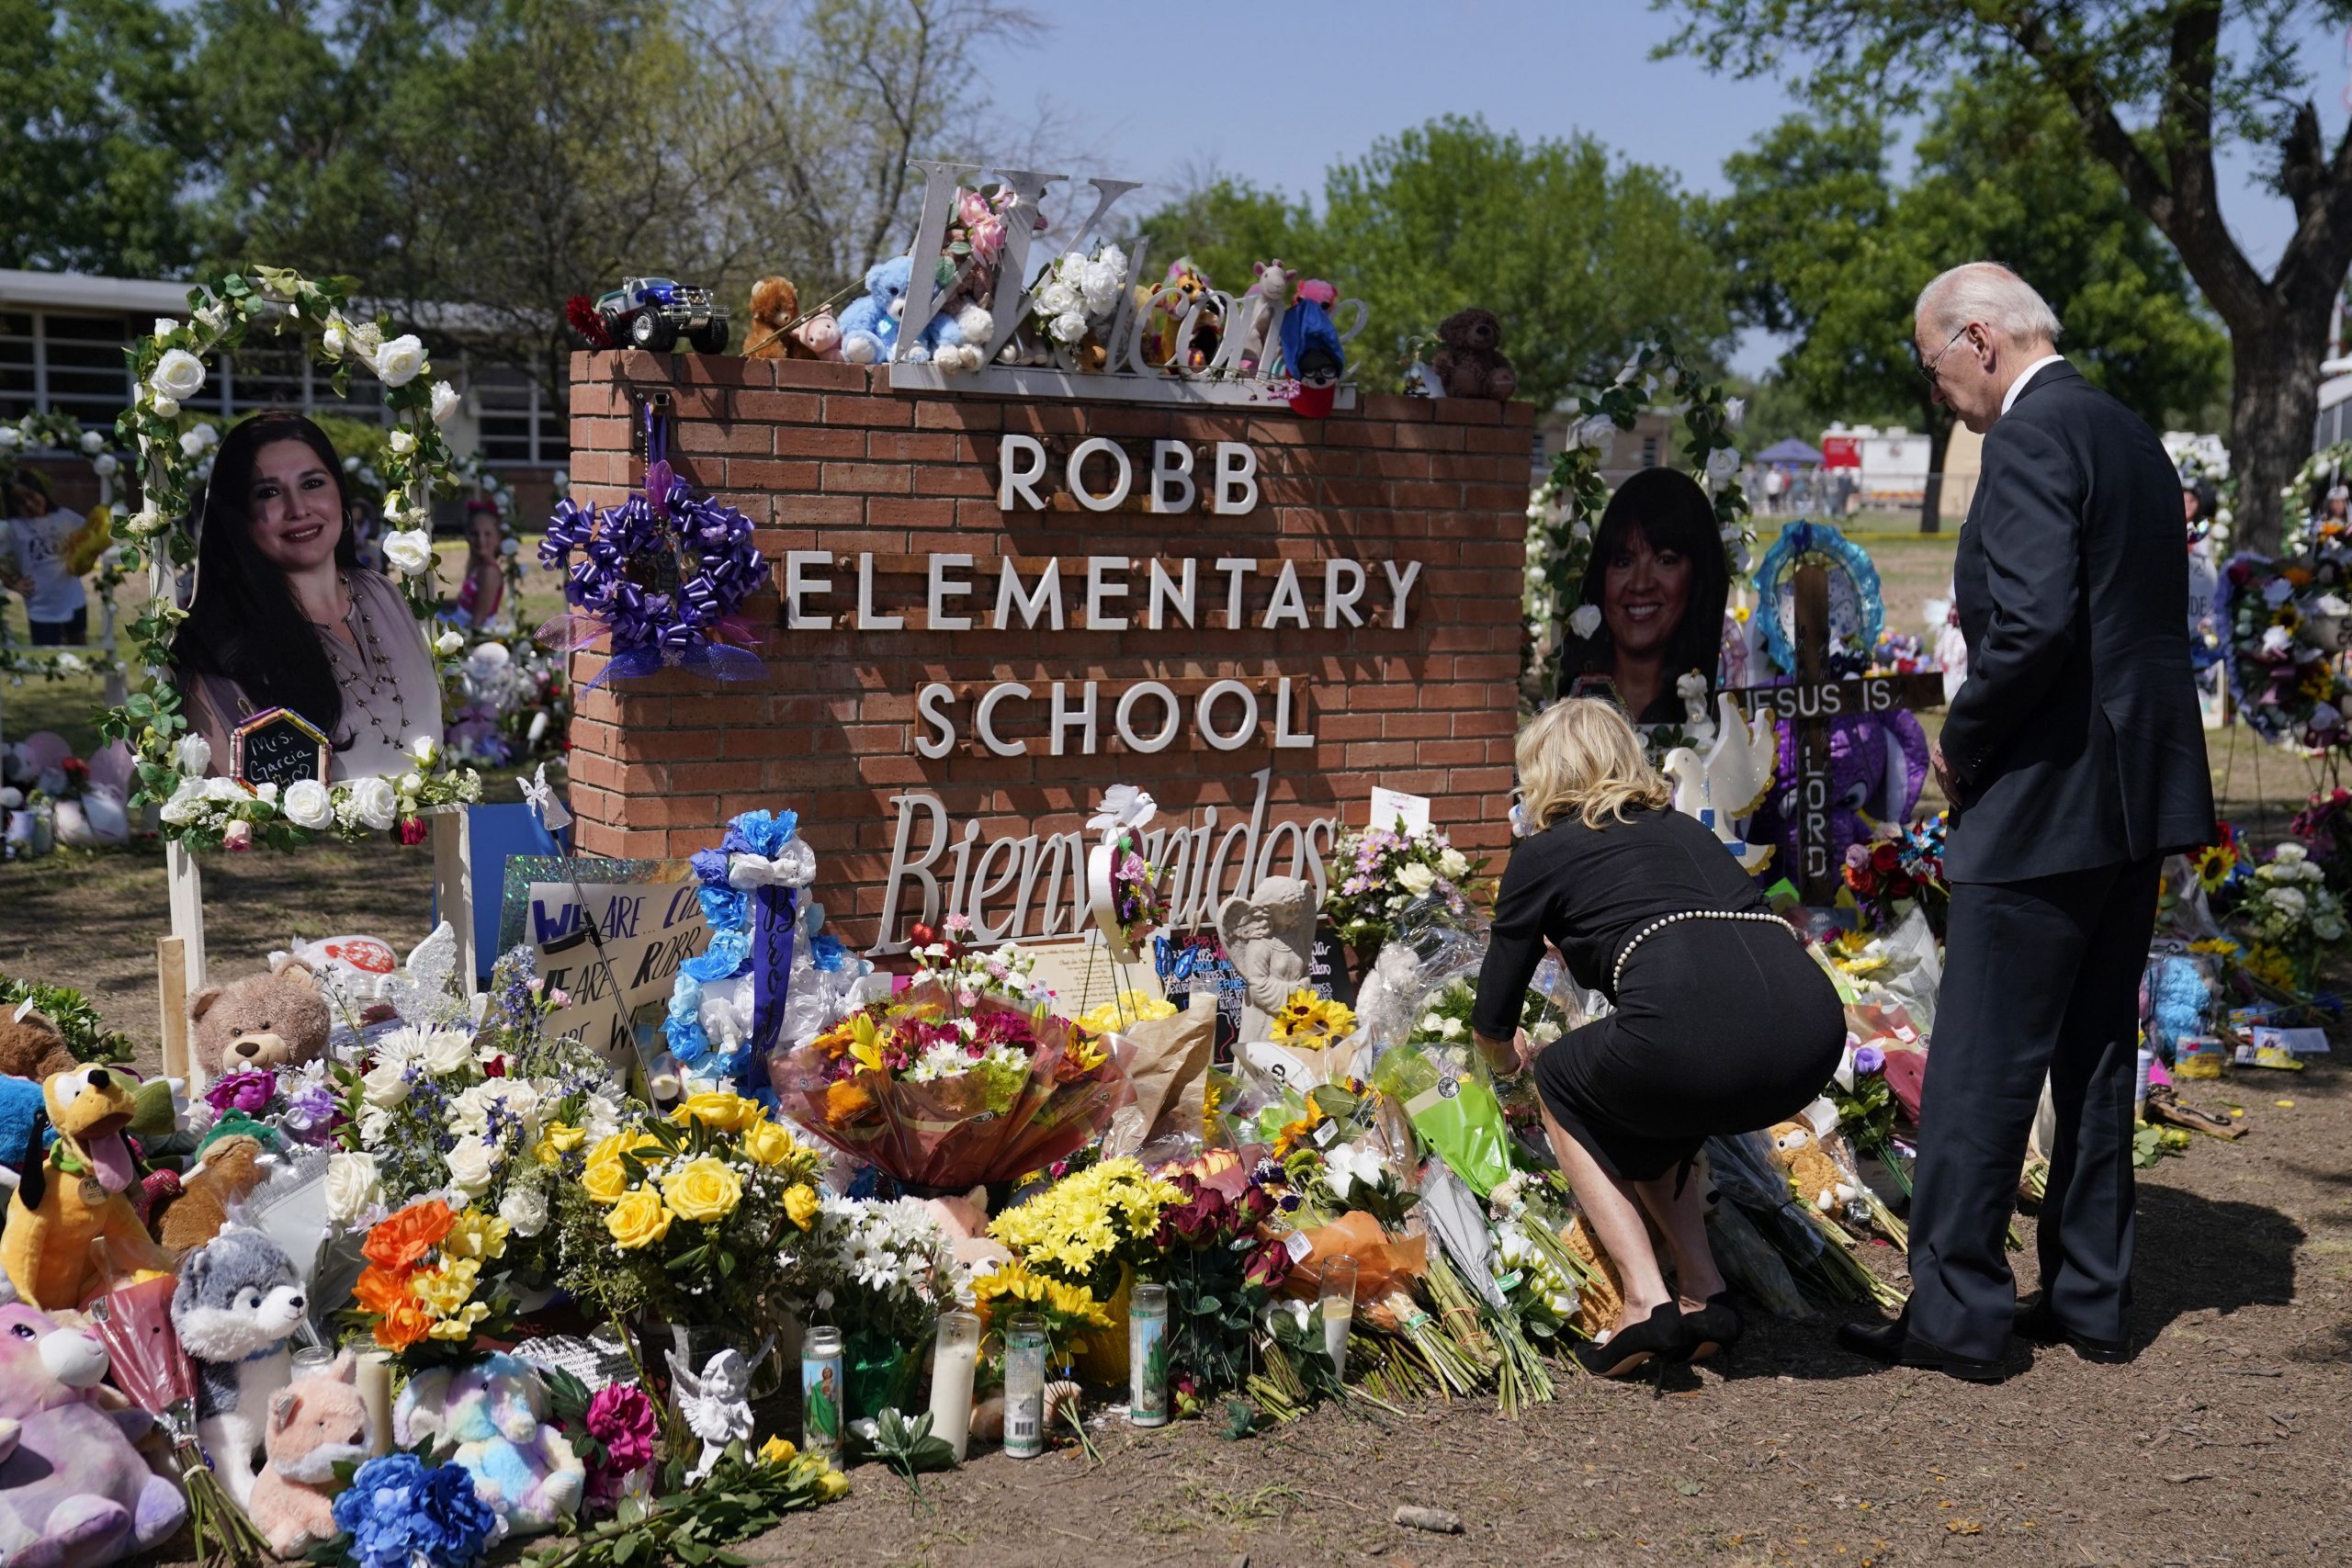 Joe Biden visits Uvalde after elementary school shooting: Key takeaways